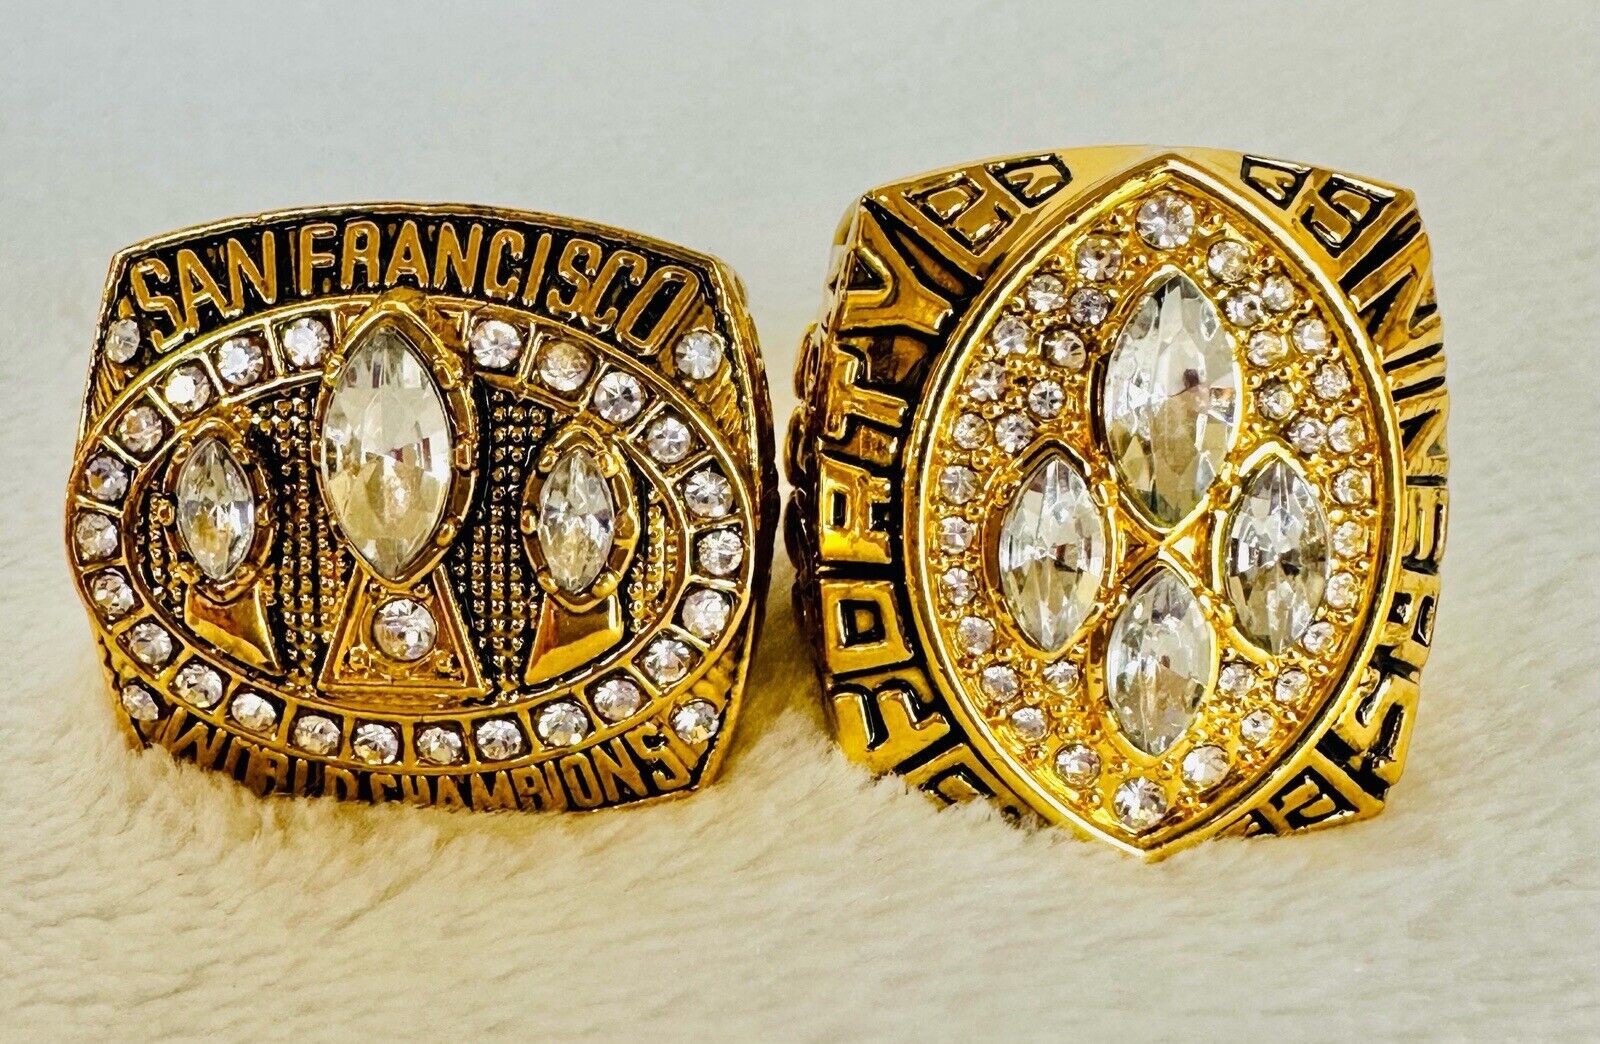 Super Bowl rings